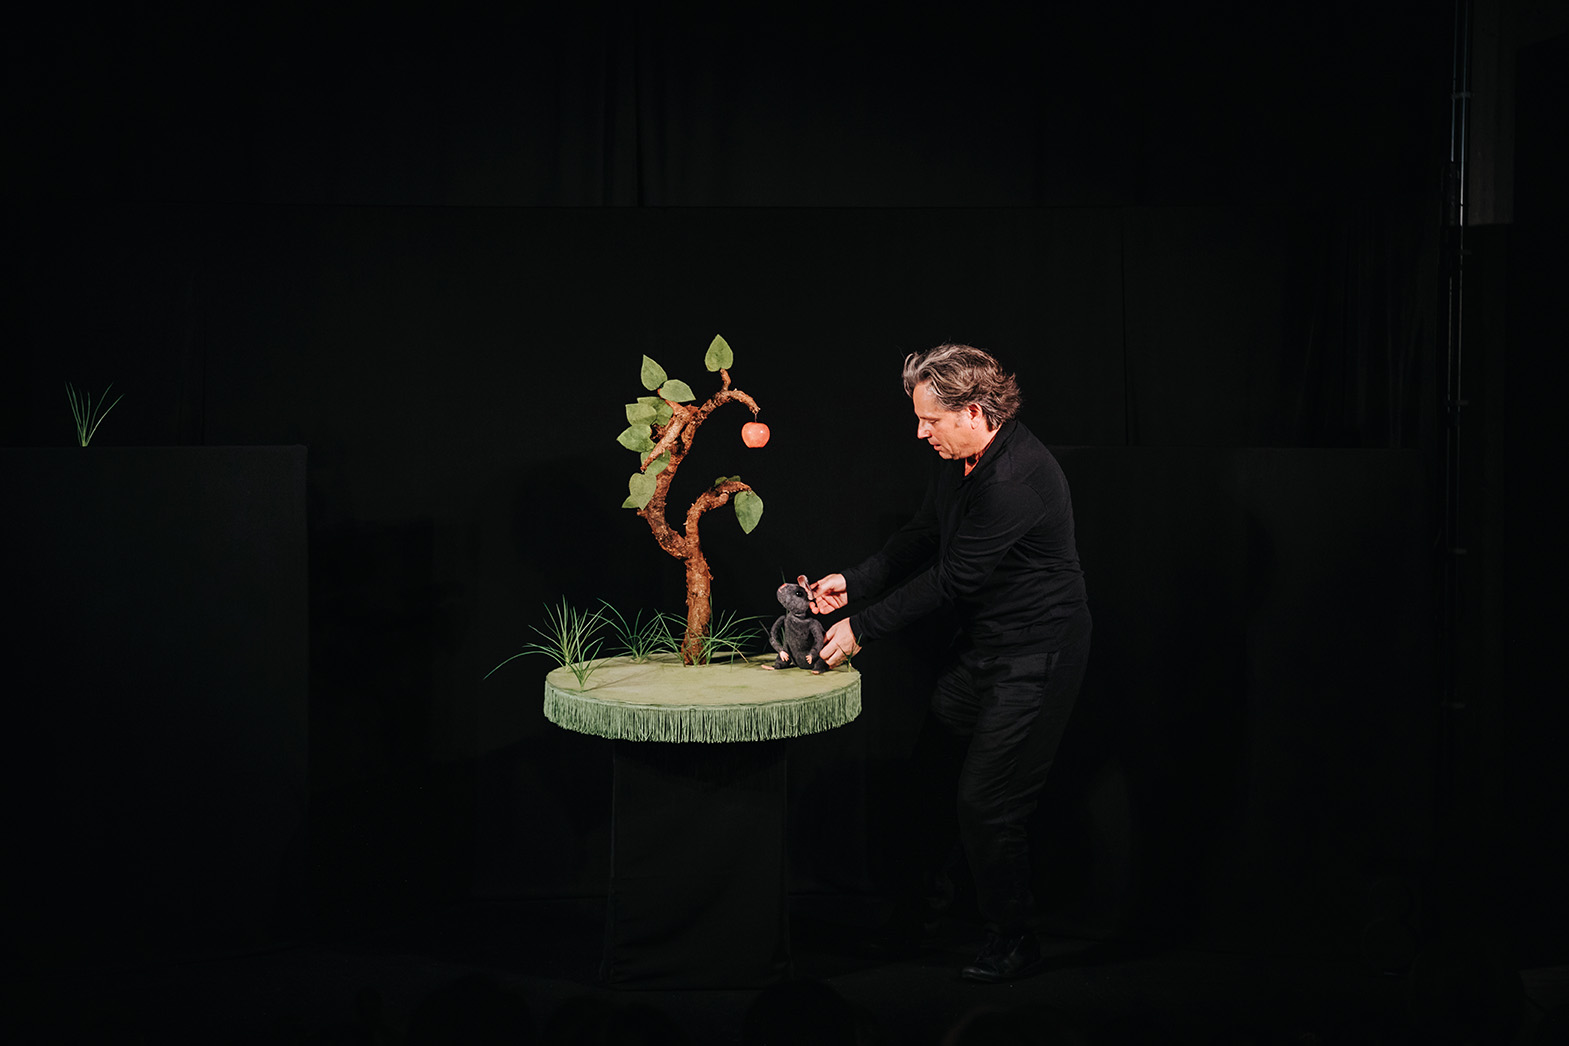 Föreställningen heter Musen och äpplet, och visas för Malmös förskolor under hösten.